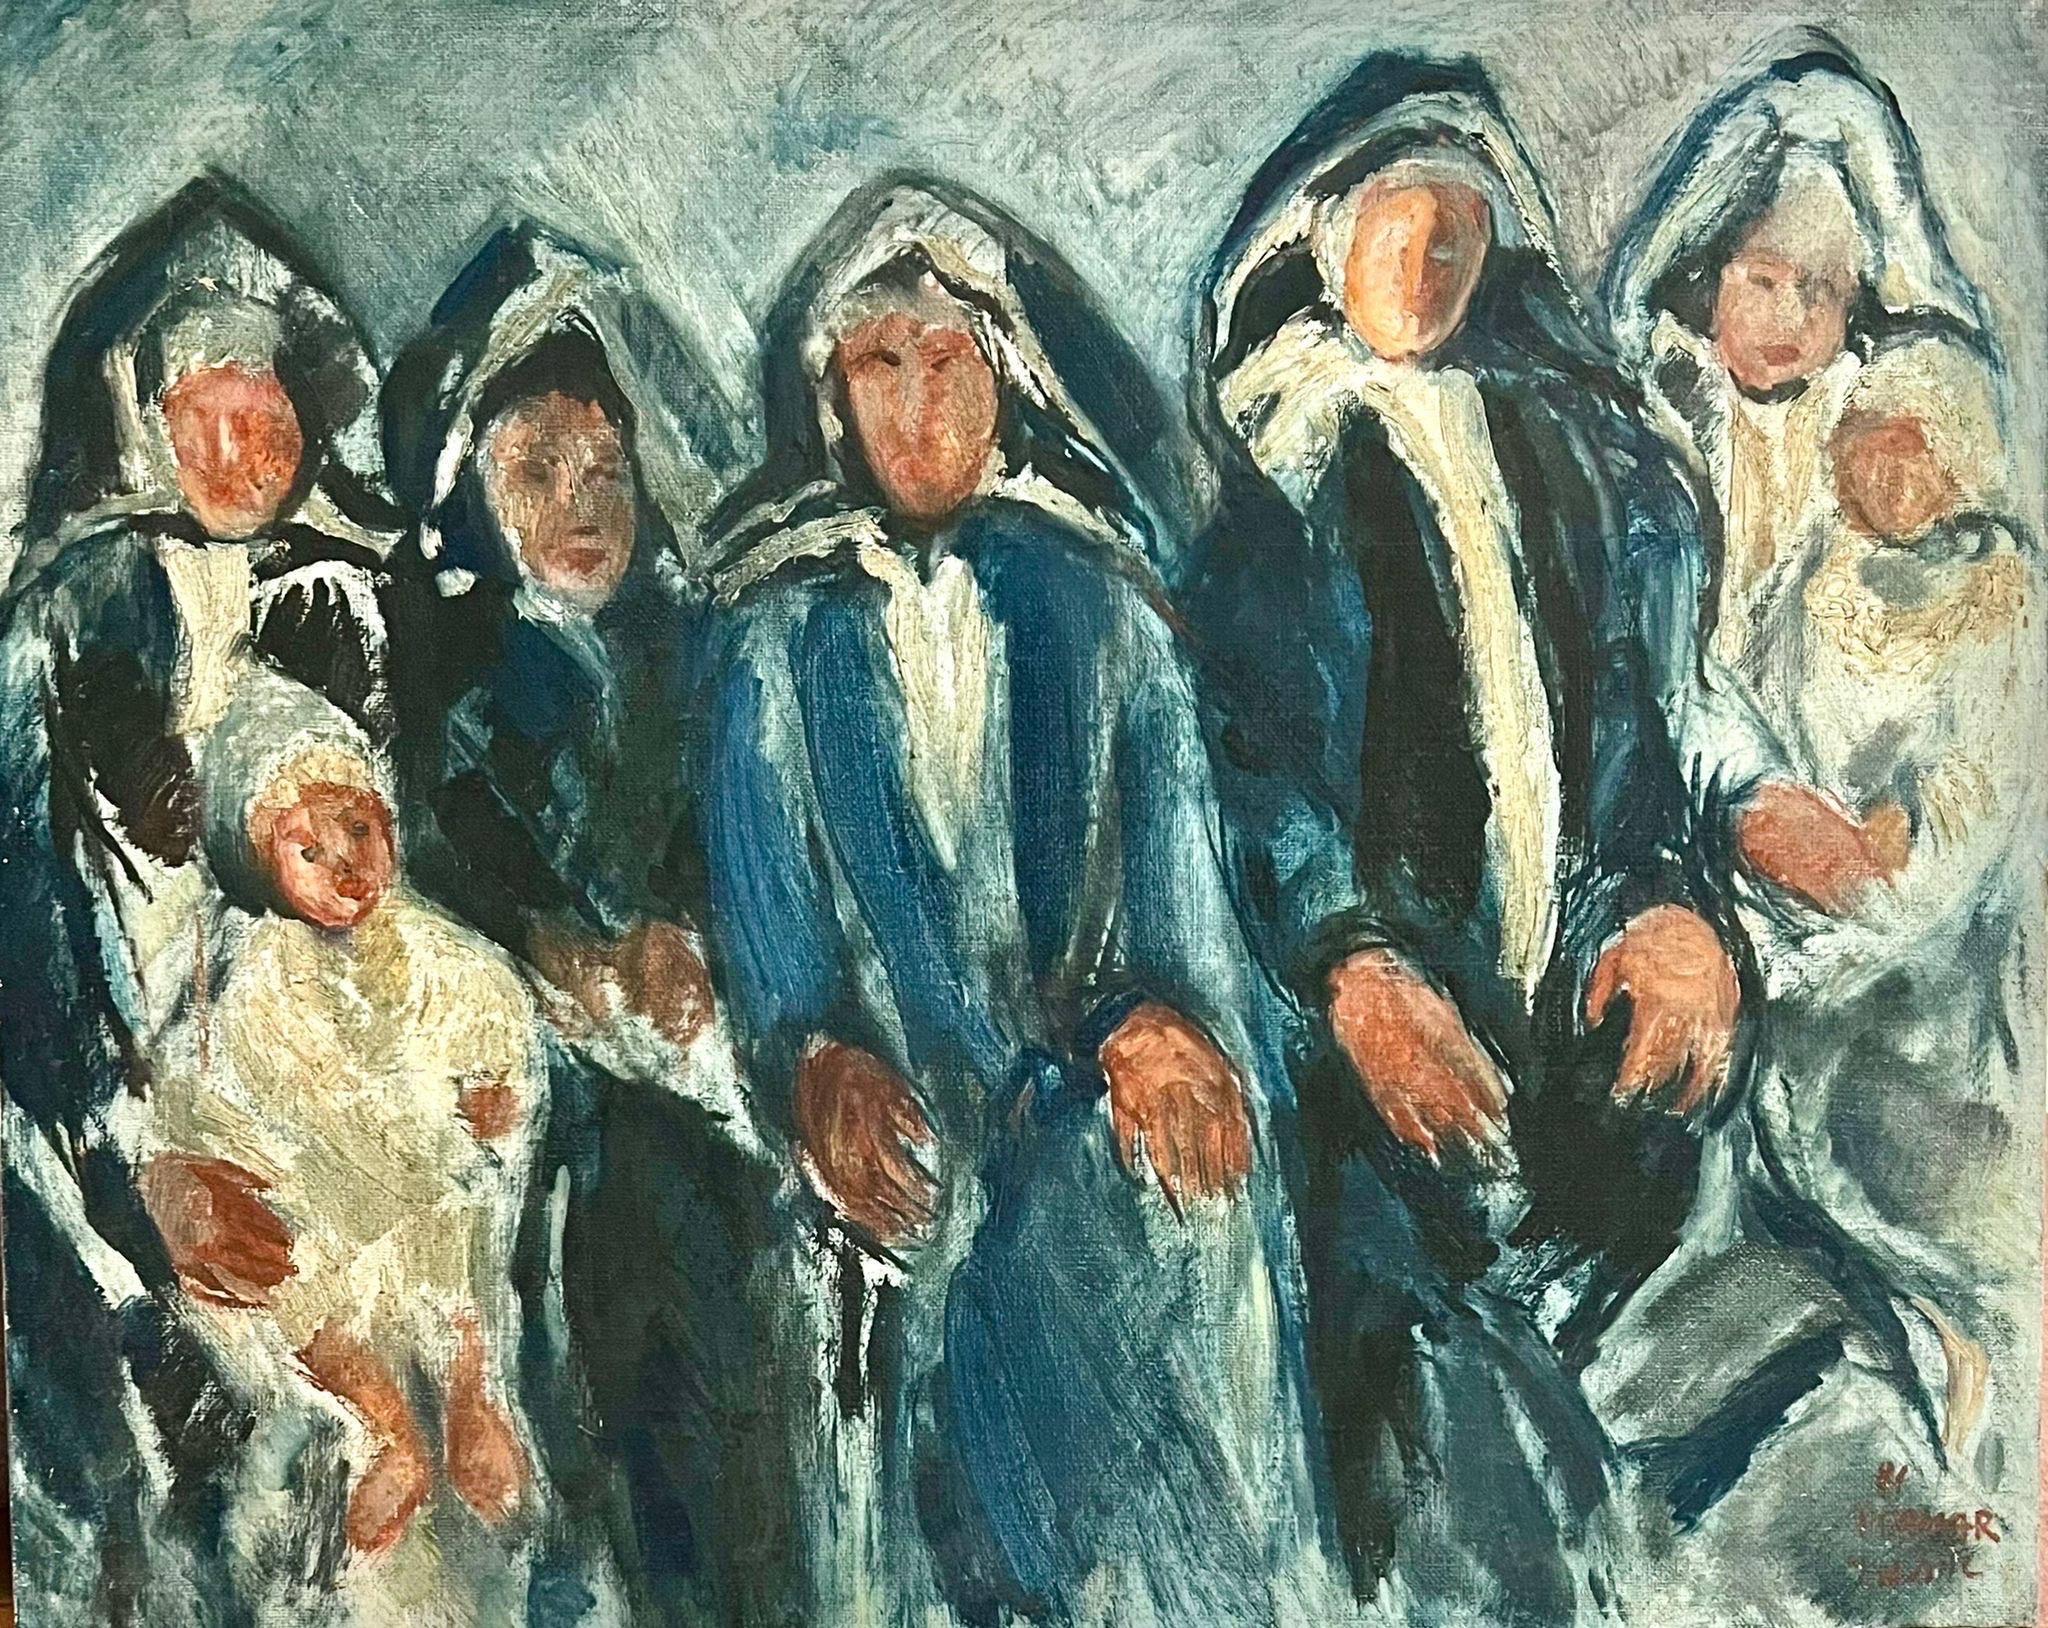 Itamar Siani, artiste israélien, peintre, graveur, né en 1941, Yémen
Son art commémore l'héritage culturel et les traditions uniques de la communauté juive yéménite, qui est retournée en Terre promise sur les "ailes d'aigle", le nom de code du